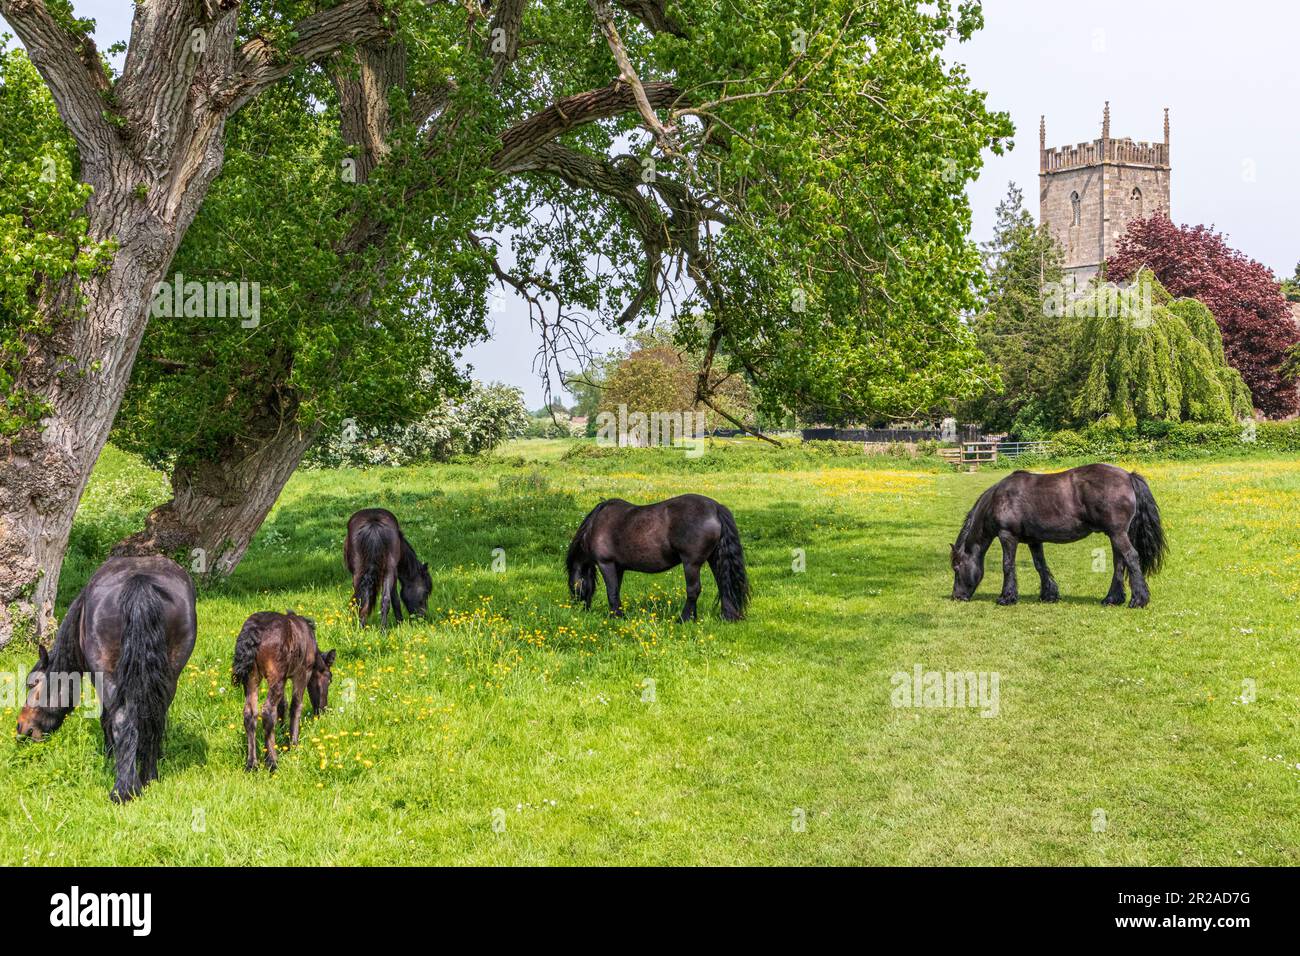 Pferde und ein junges Fohlen, das auf einer Wiese neben der St. Marys Kirche im Severnside-Dorf Frampton auf Severn, Gloucestershire, England weidet Stockfoto